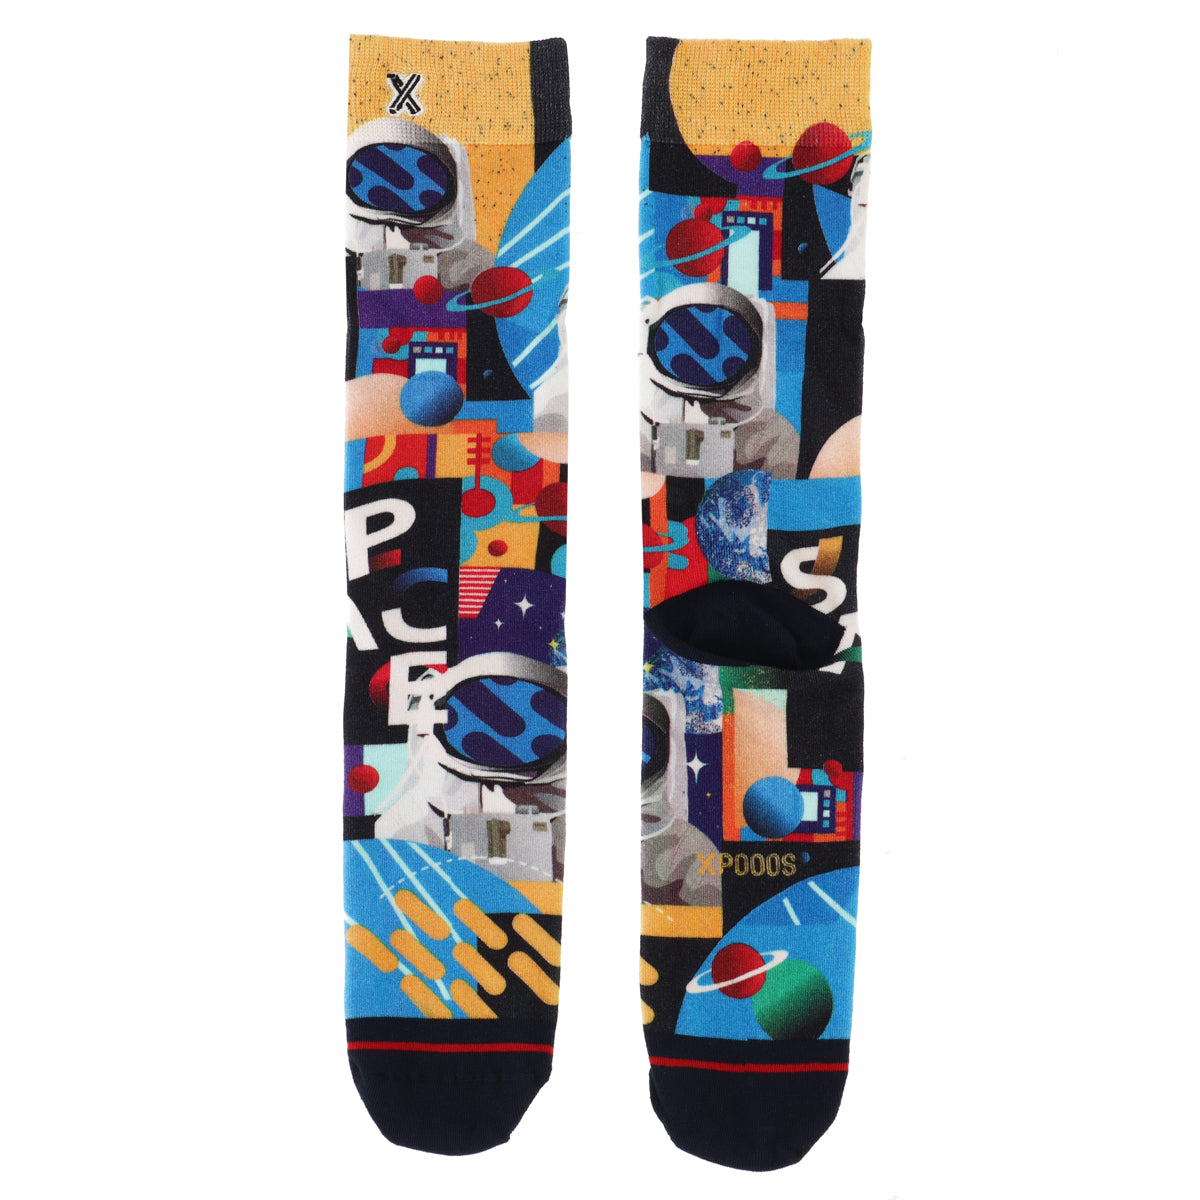 Apollo 11 Bamboo men's socks – XPOOOS